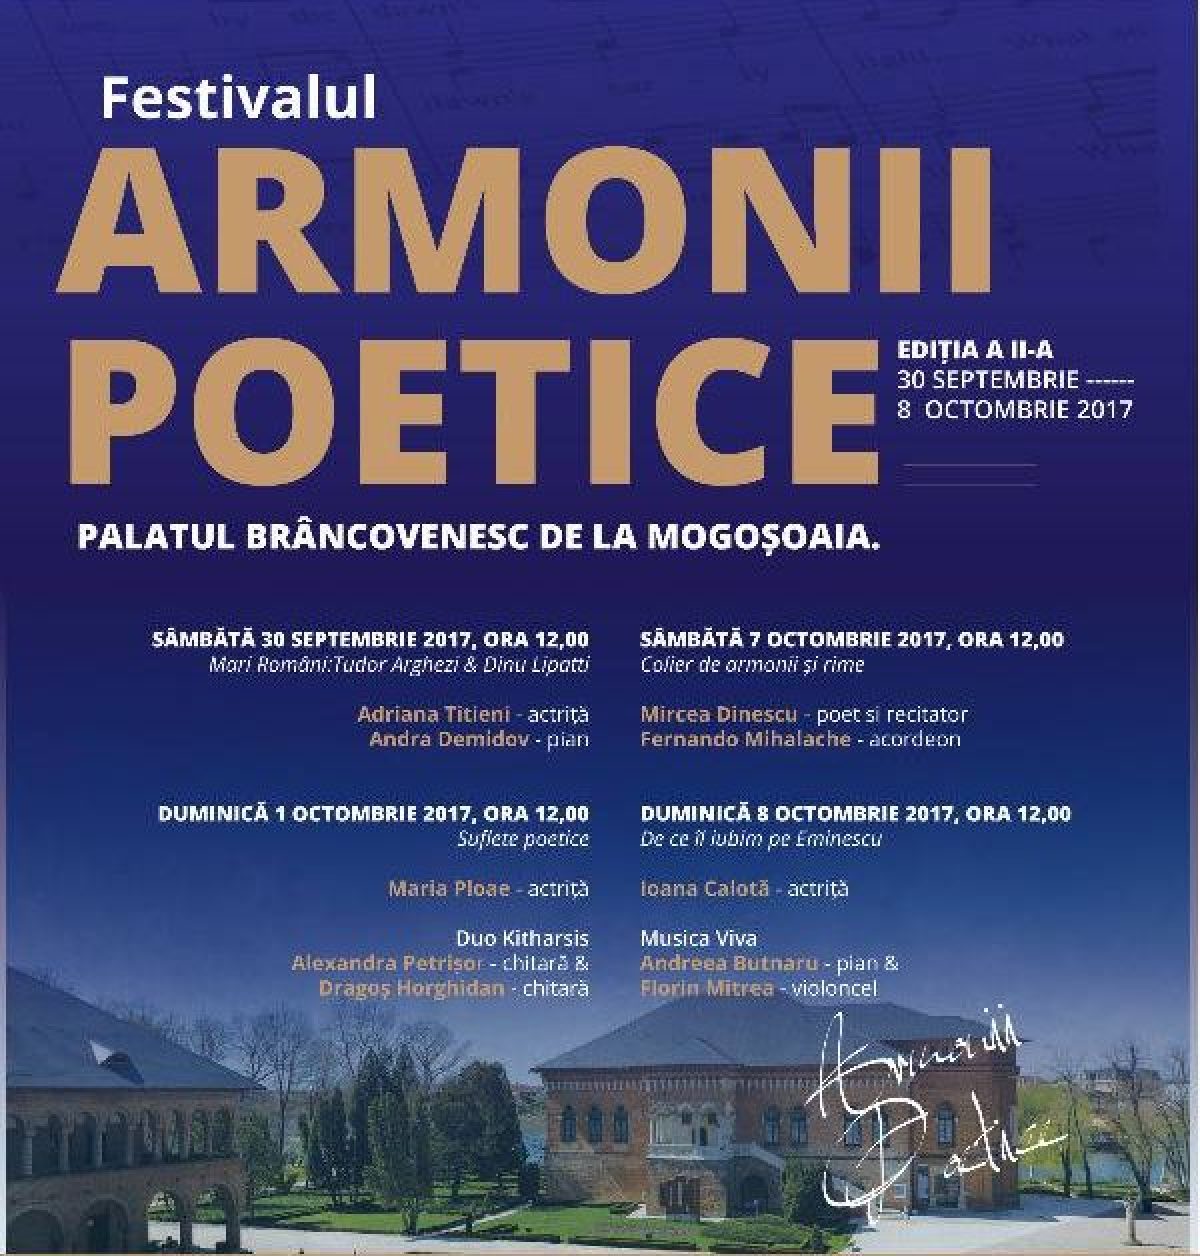 armonii-poetice-1-1200x1256_c